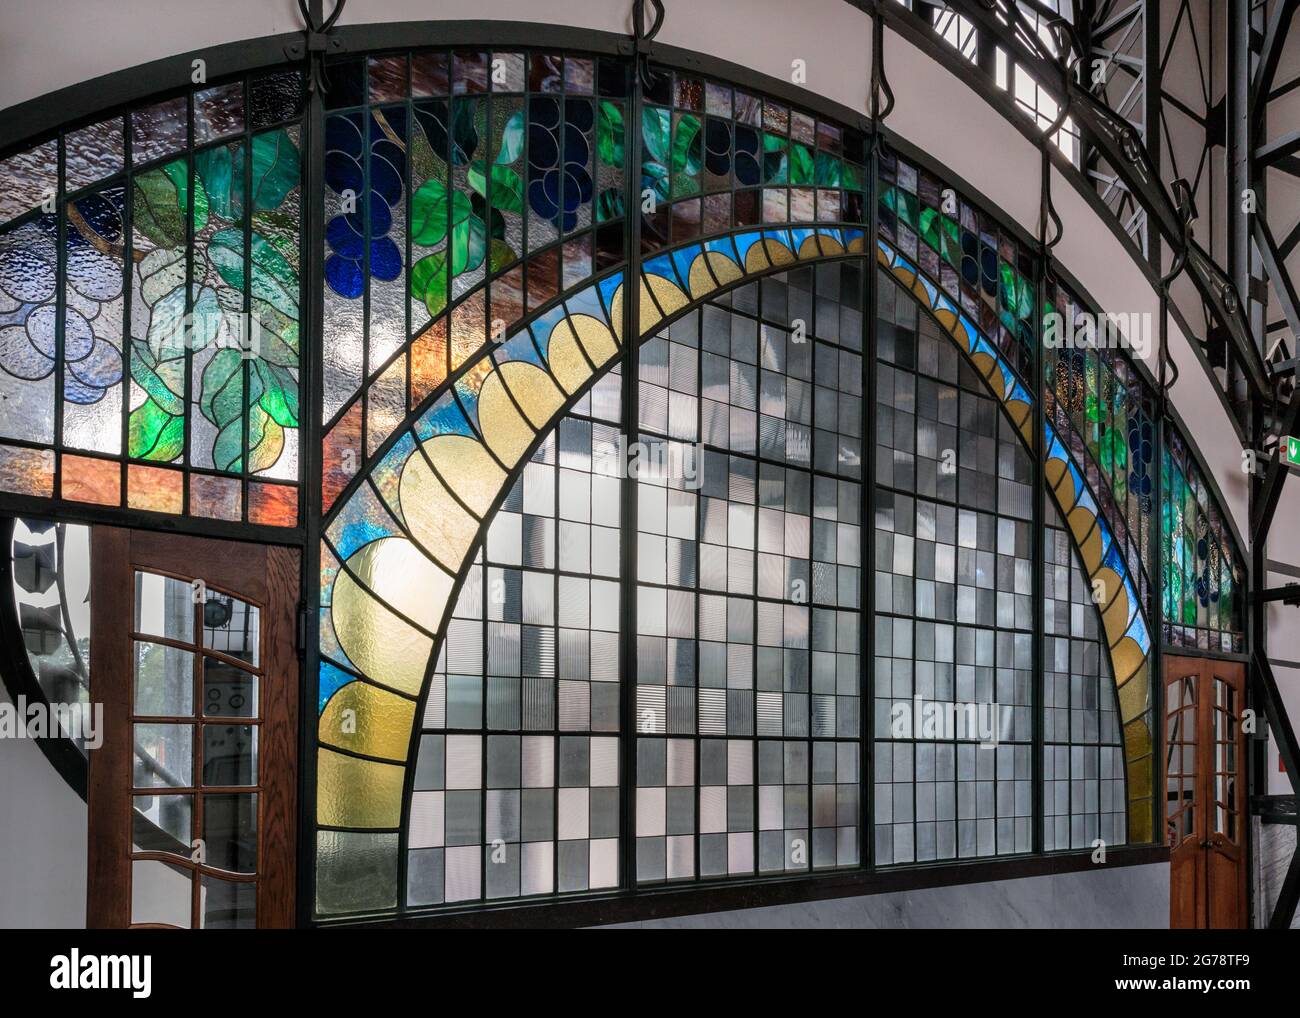 Fenêtre en vitrail Art nouveau du portail de la salle des machines du site du patrimoine industriel de la collierie Zeche Zollern, Dortmund, région de Ruhr, Allemagne Banque D'Images